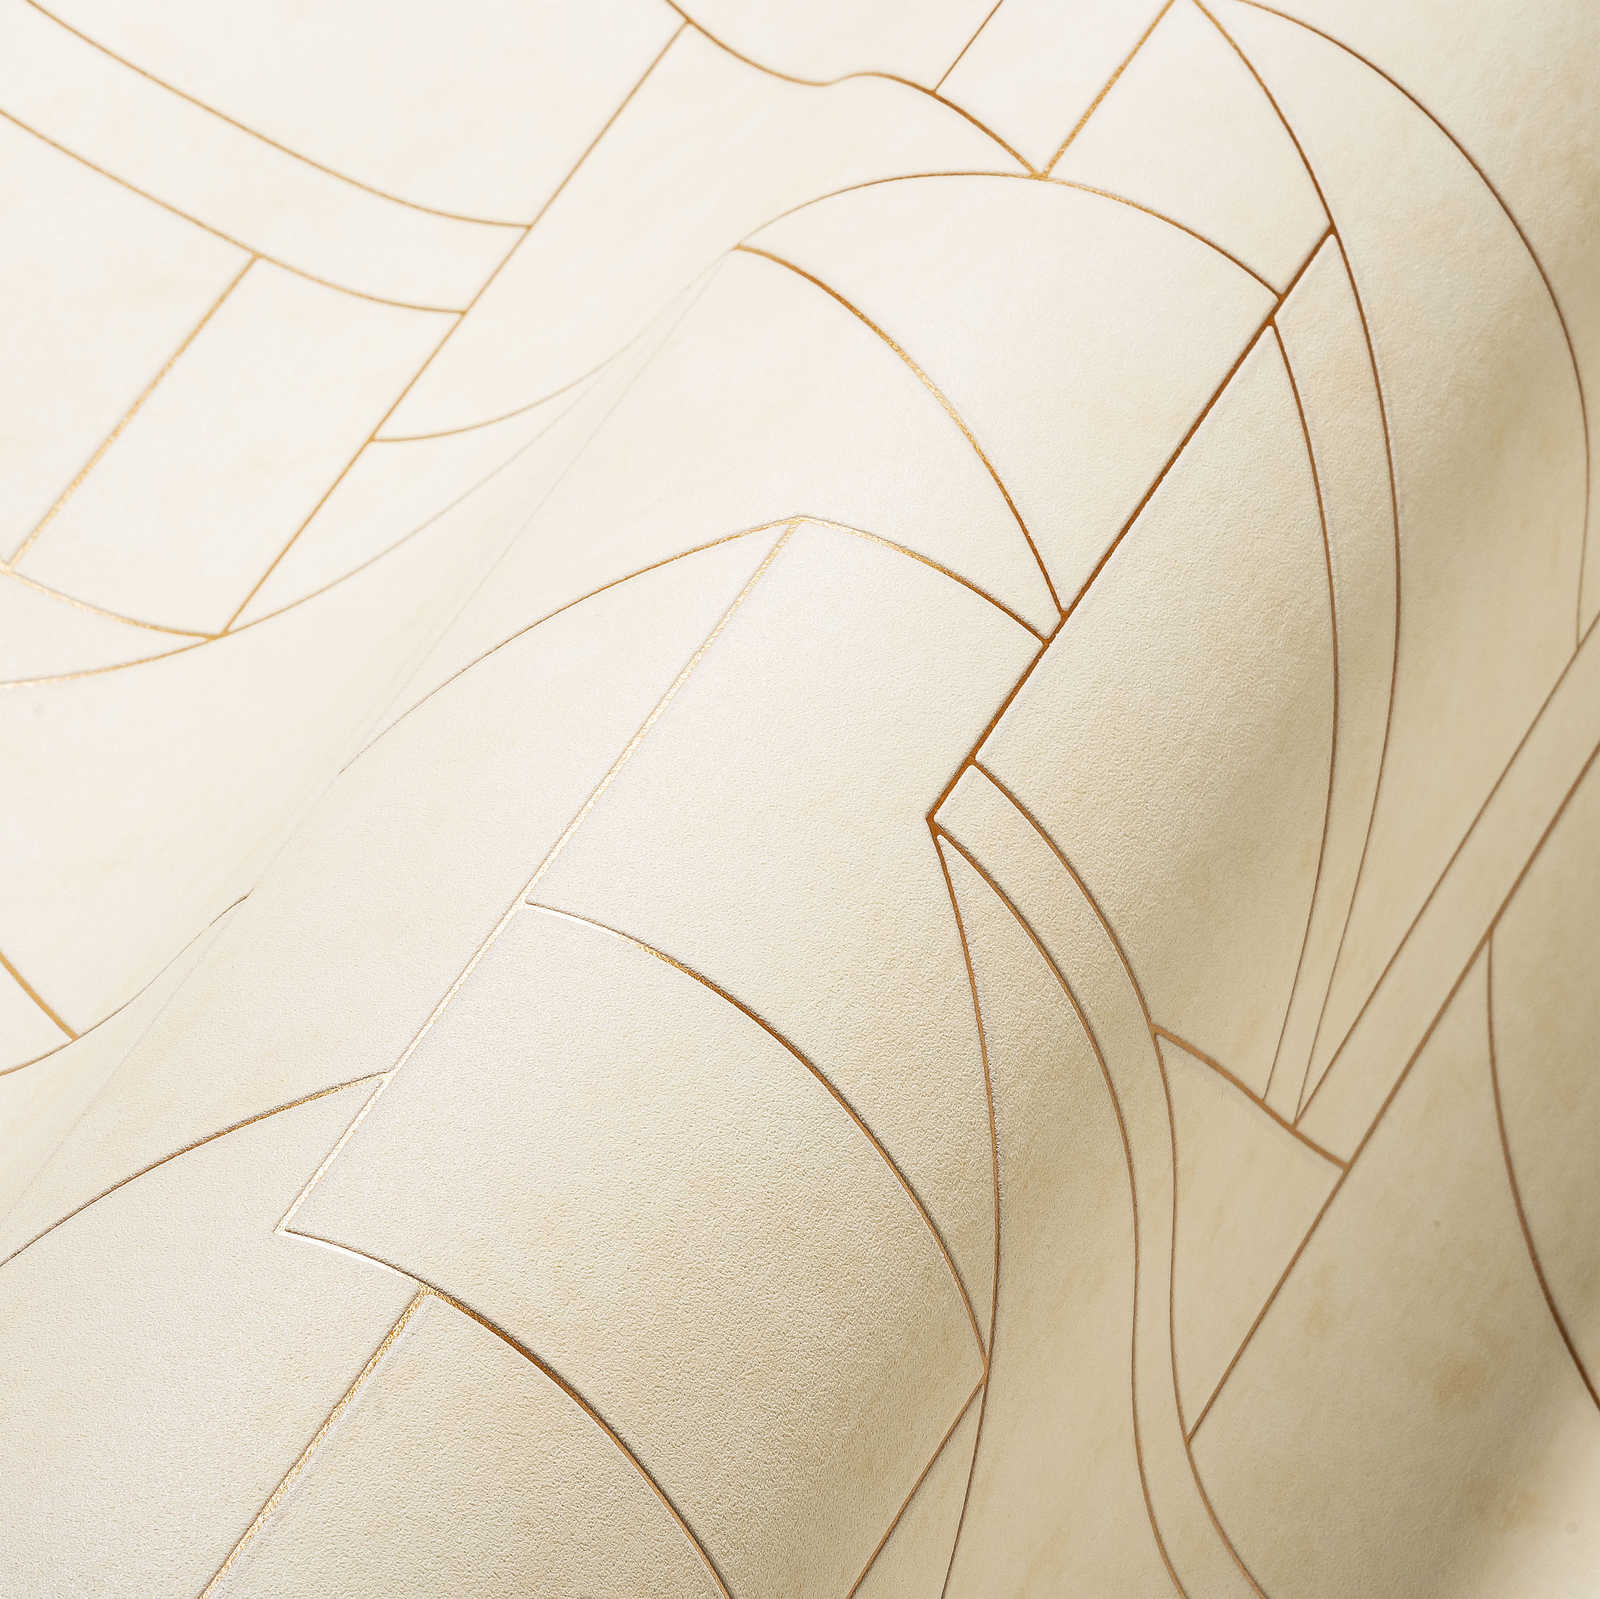             Papier peint graphique avec motifs de lignes modernes - blanc, crème, bronze
        